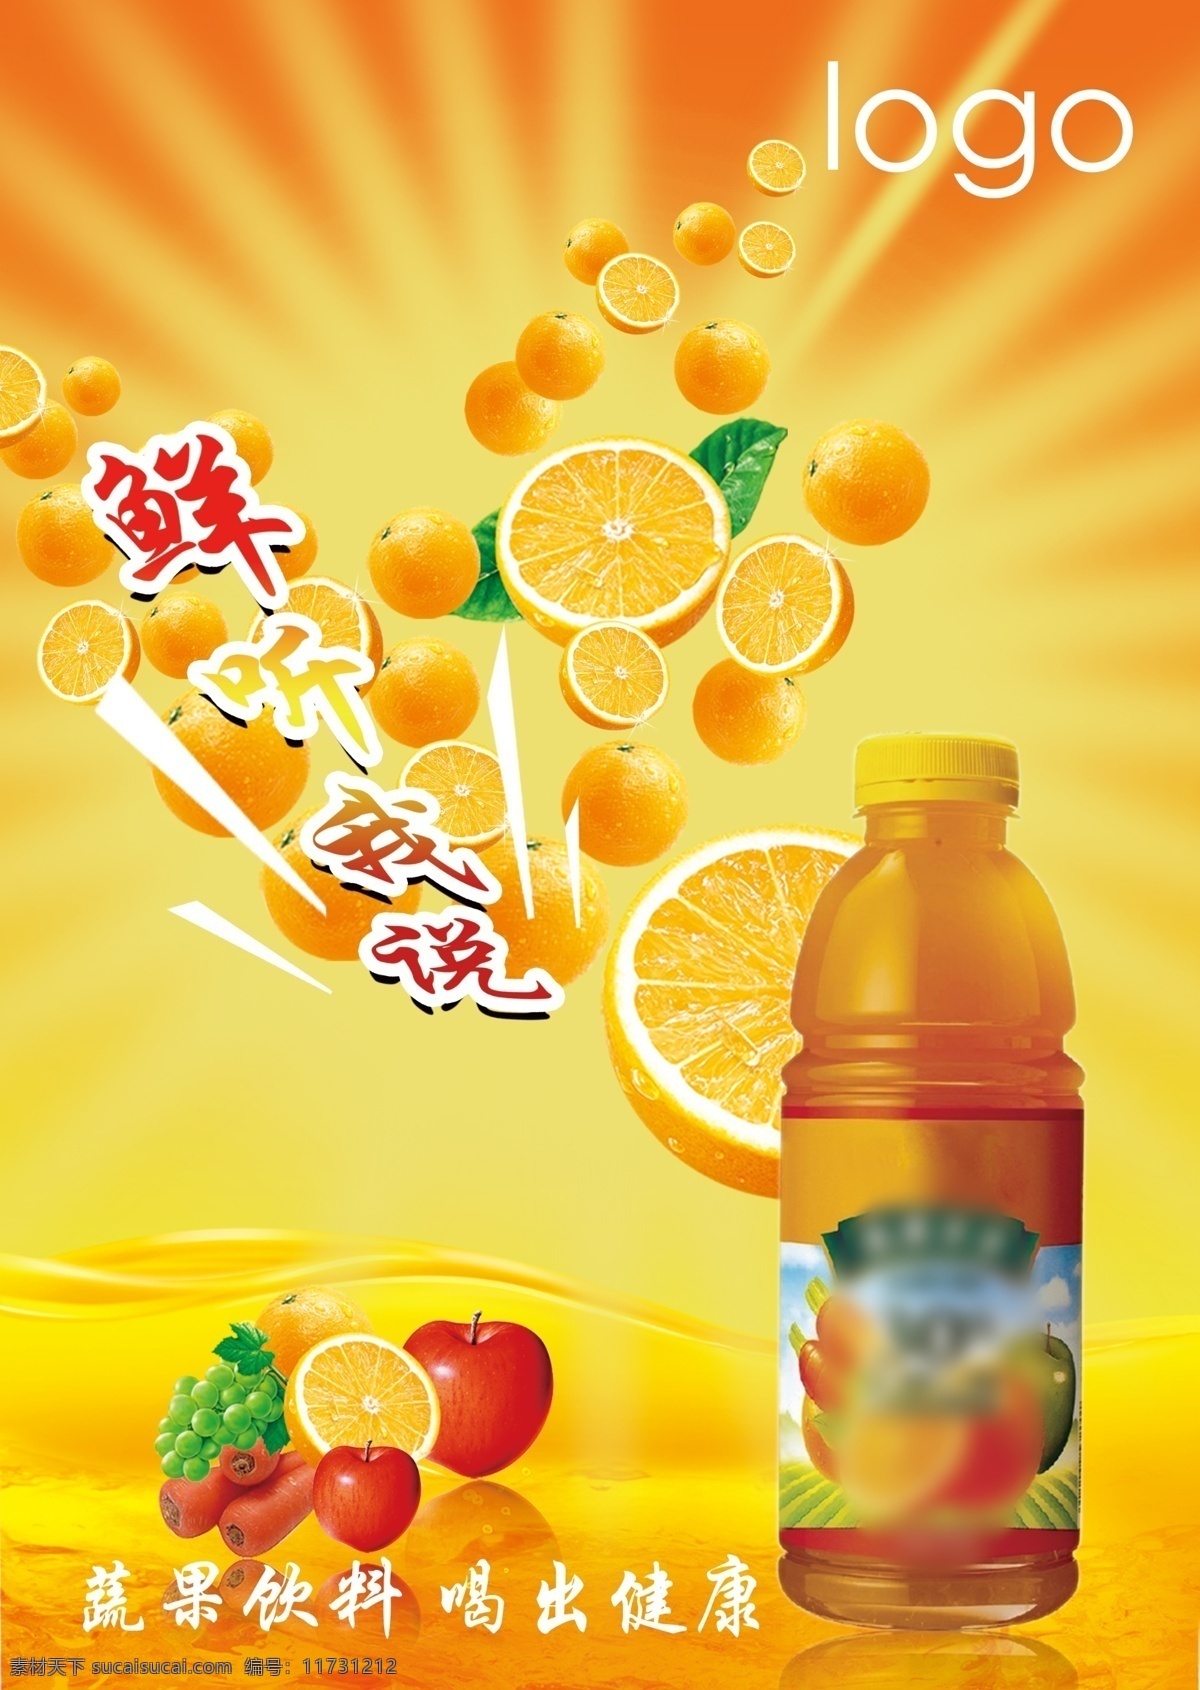 蔬果饮料 蔬果 饮料 橙子 水果海报 黄色